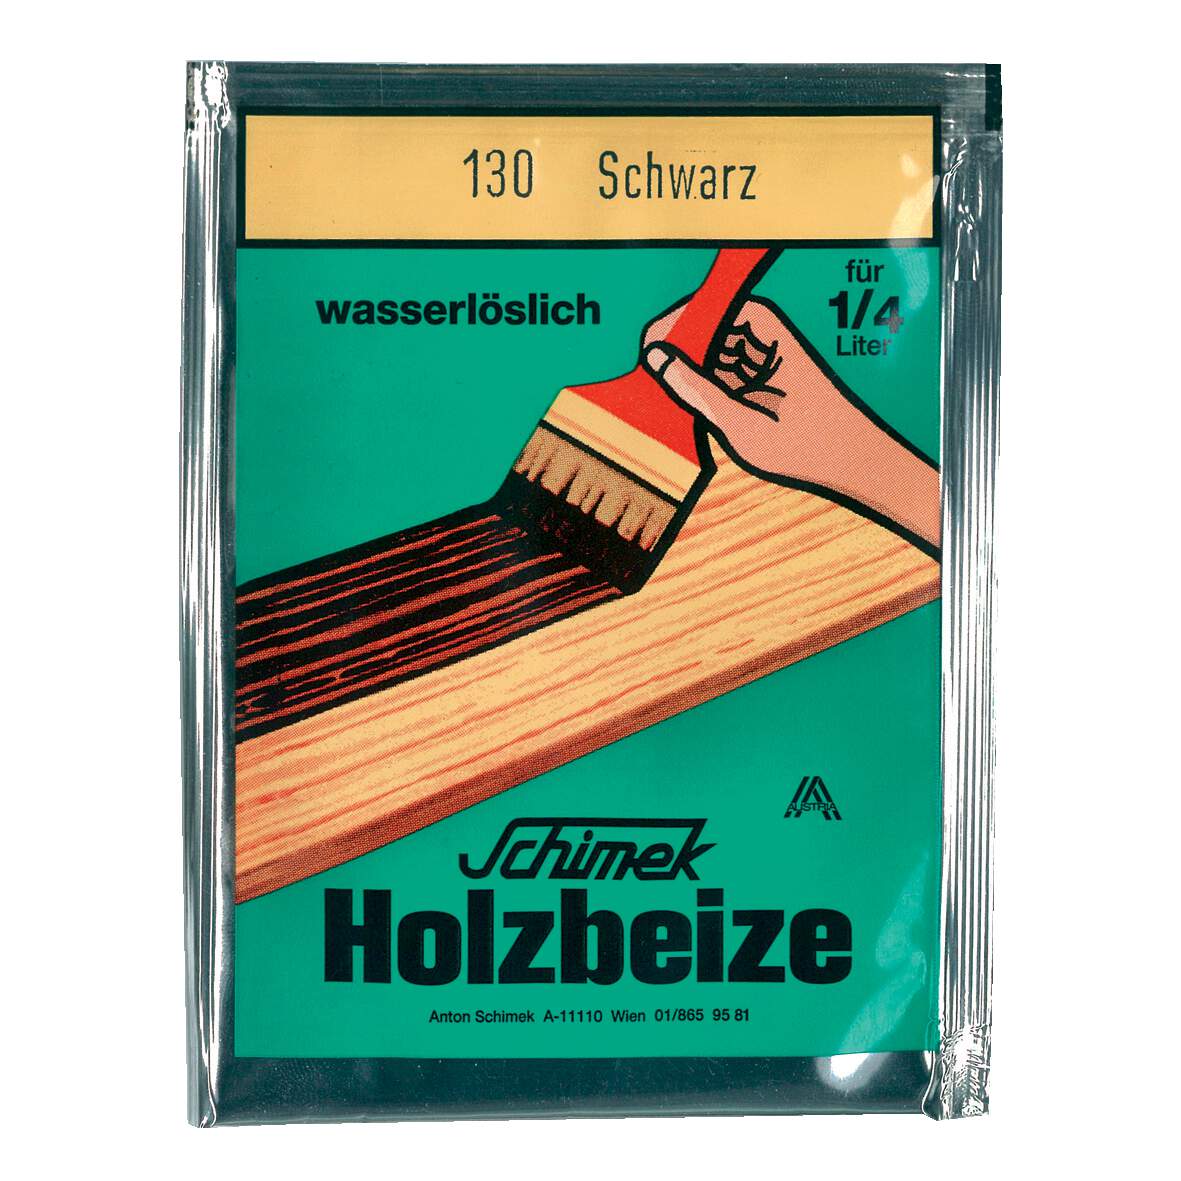 1216628 - Holzbeize wasserlöslich